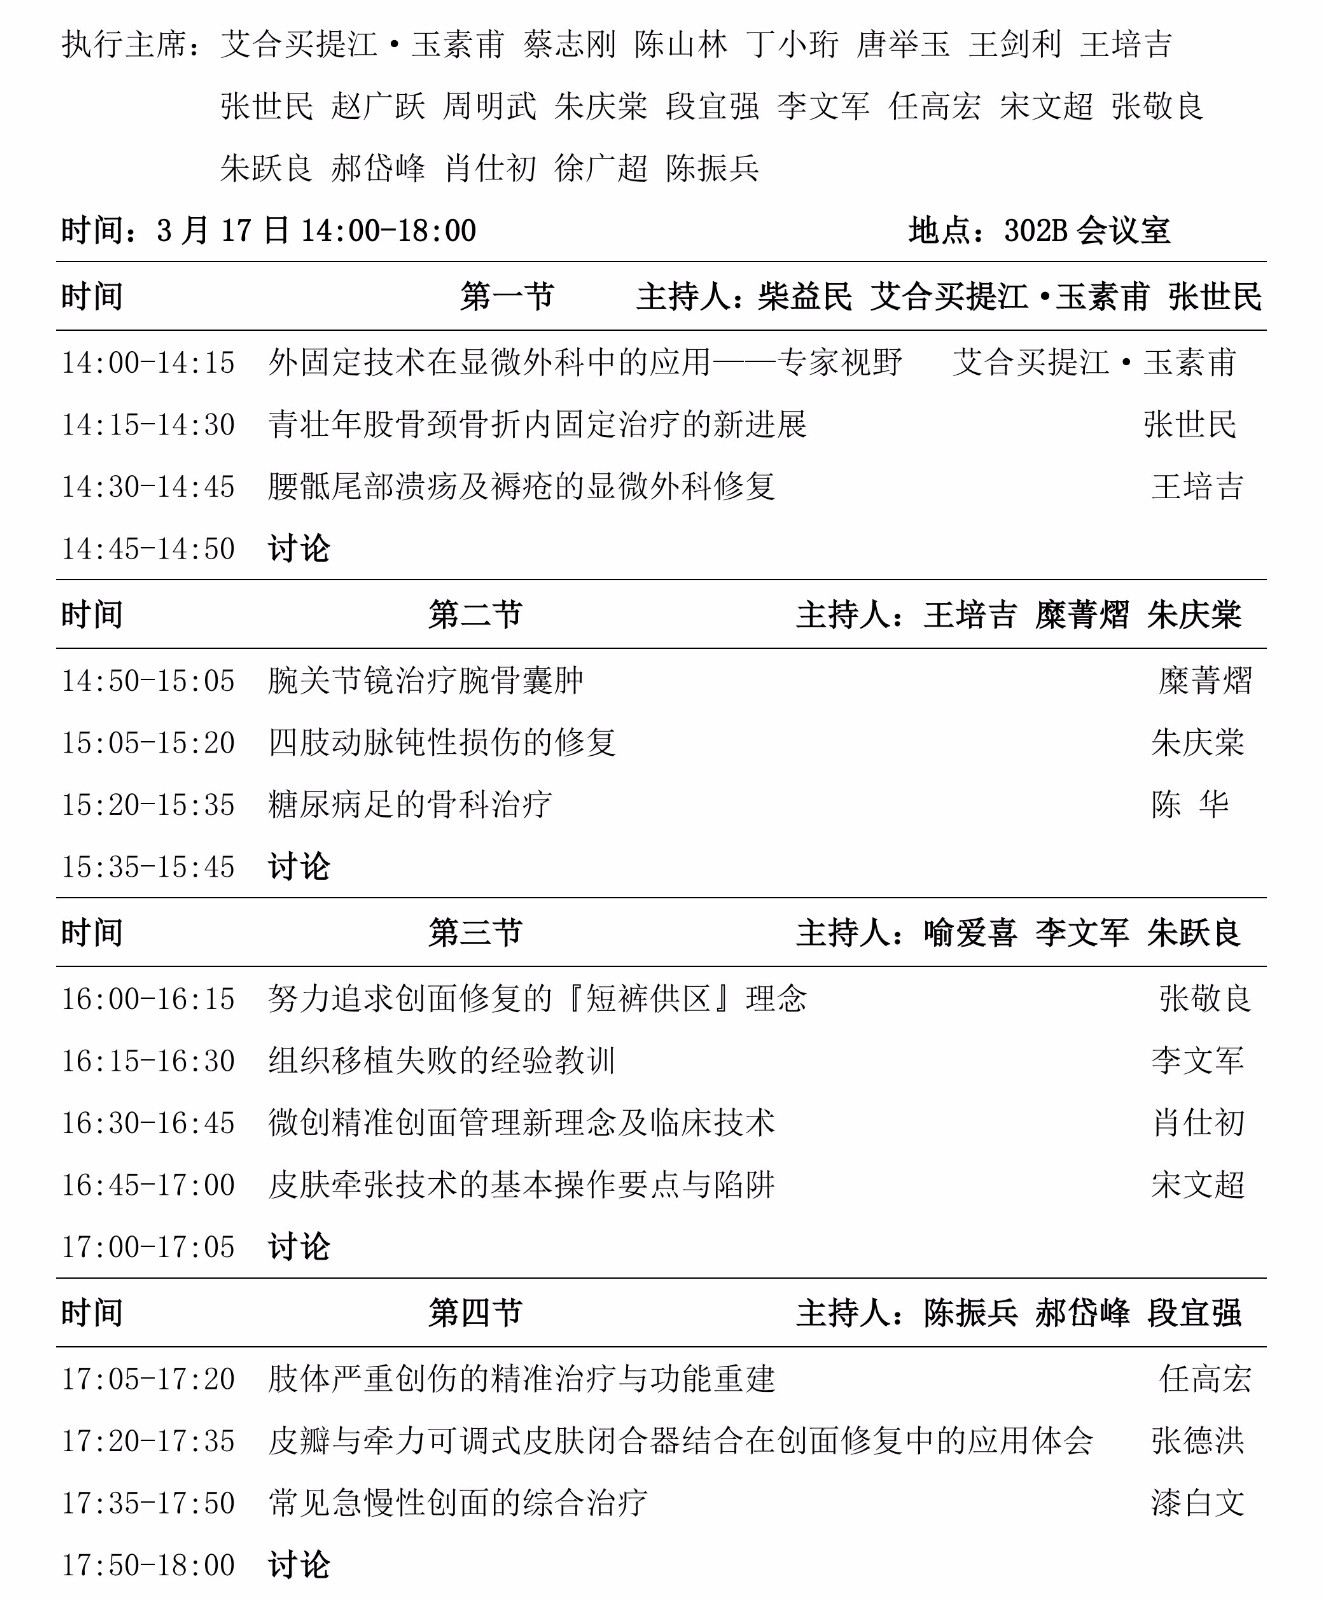 2018.3.6版第二届中国骨科创新与转化学术会议会议手册 jpg_Page31.jpg